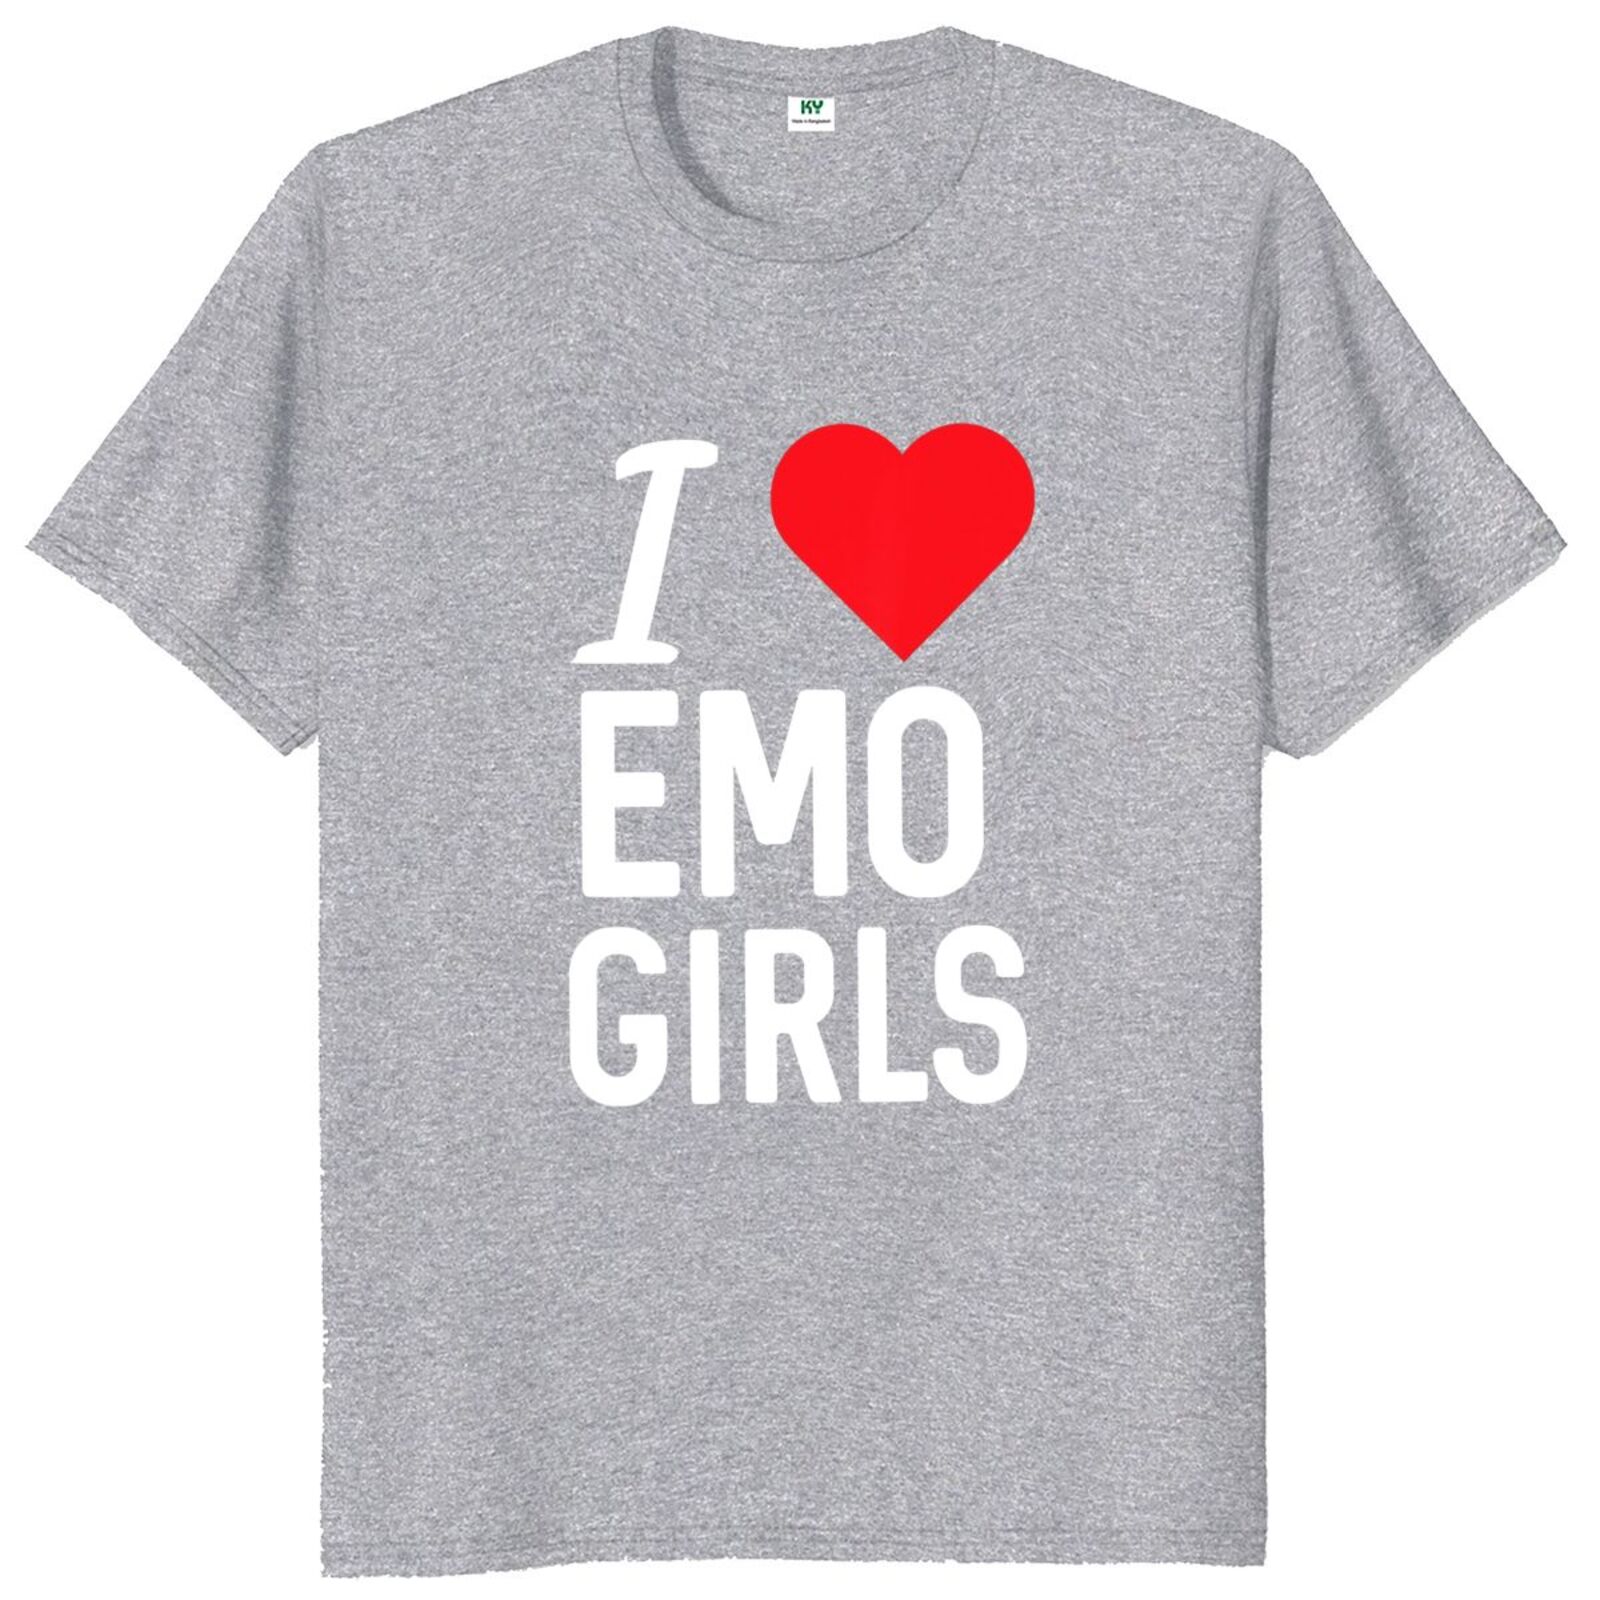 Funny Meme Tshirt I Heart / Love Emo Girls Joke Tee Gift 